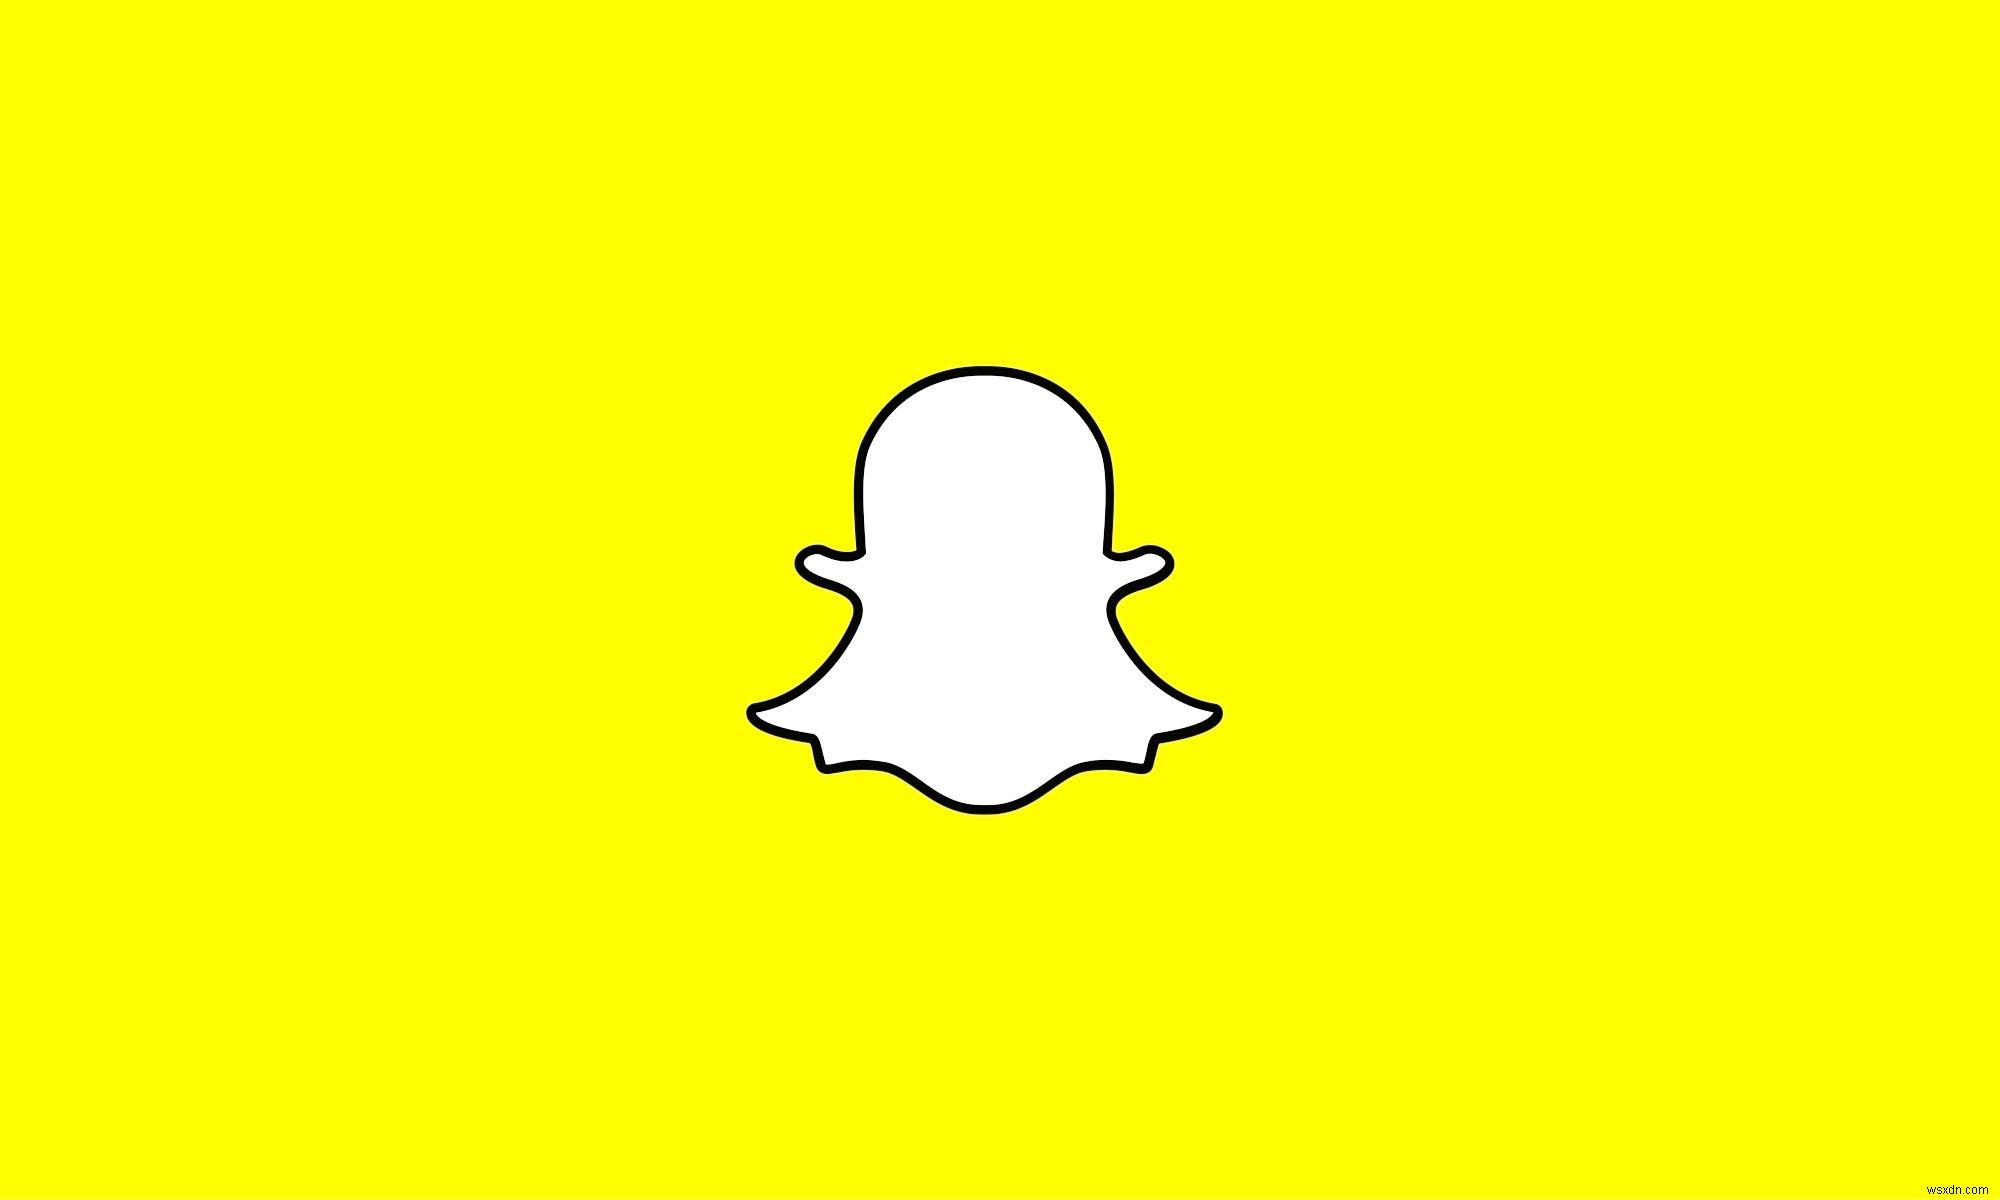 Cách tải ảnh hoặc video được lưu trữ trên thiết bị của bạn lên Snapchat 